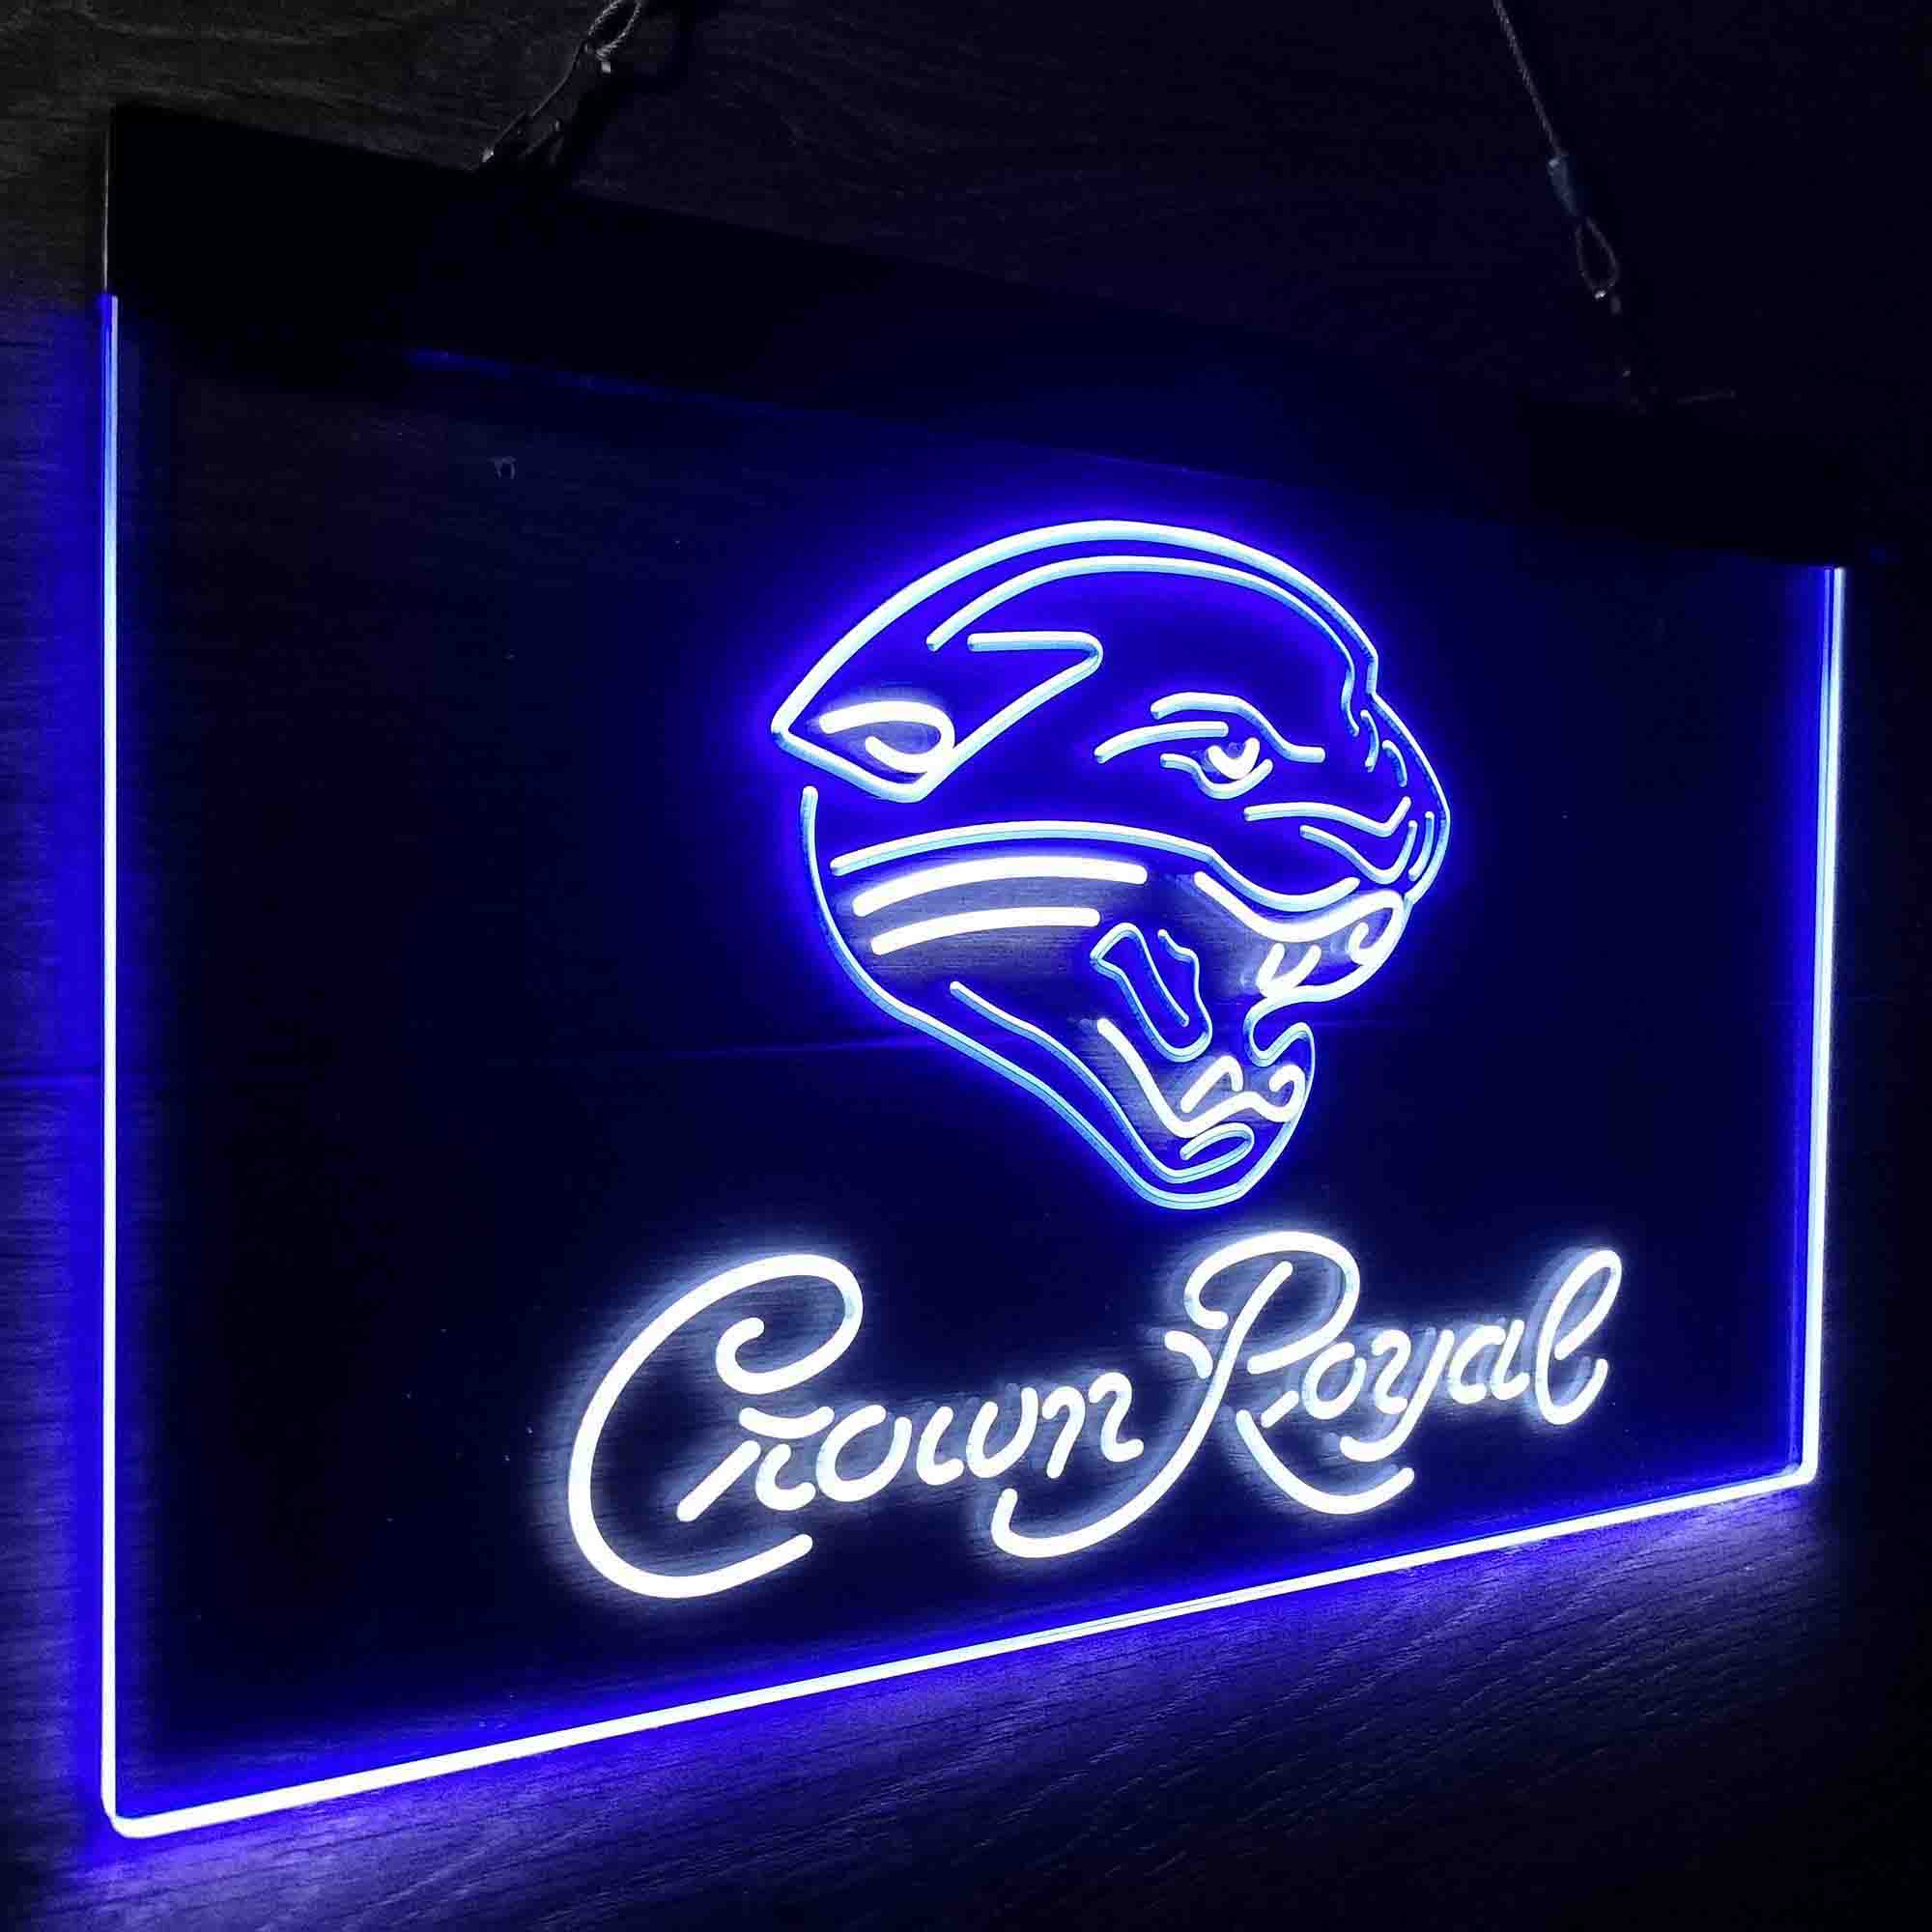 Crown Royal Bar Jacksonville Jaguars Est. 1995 LED Neon Sign